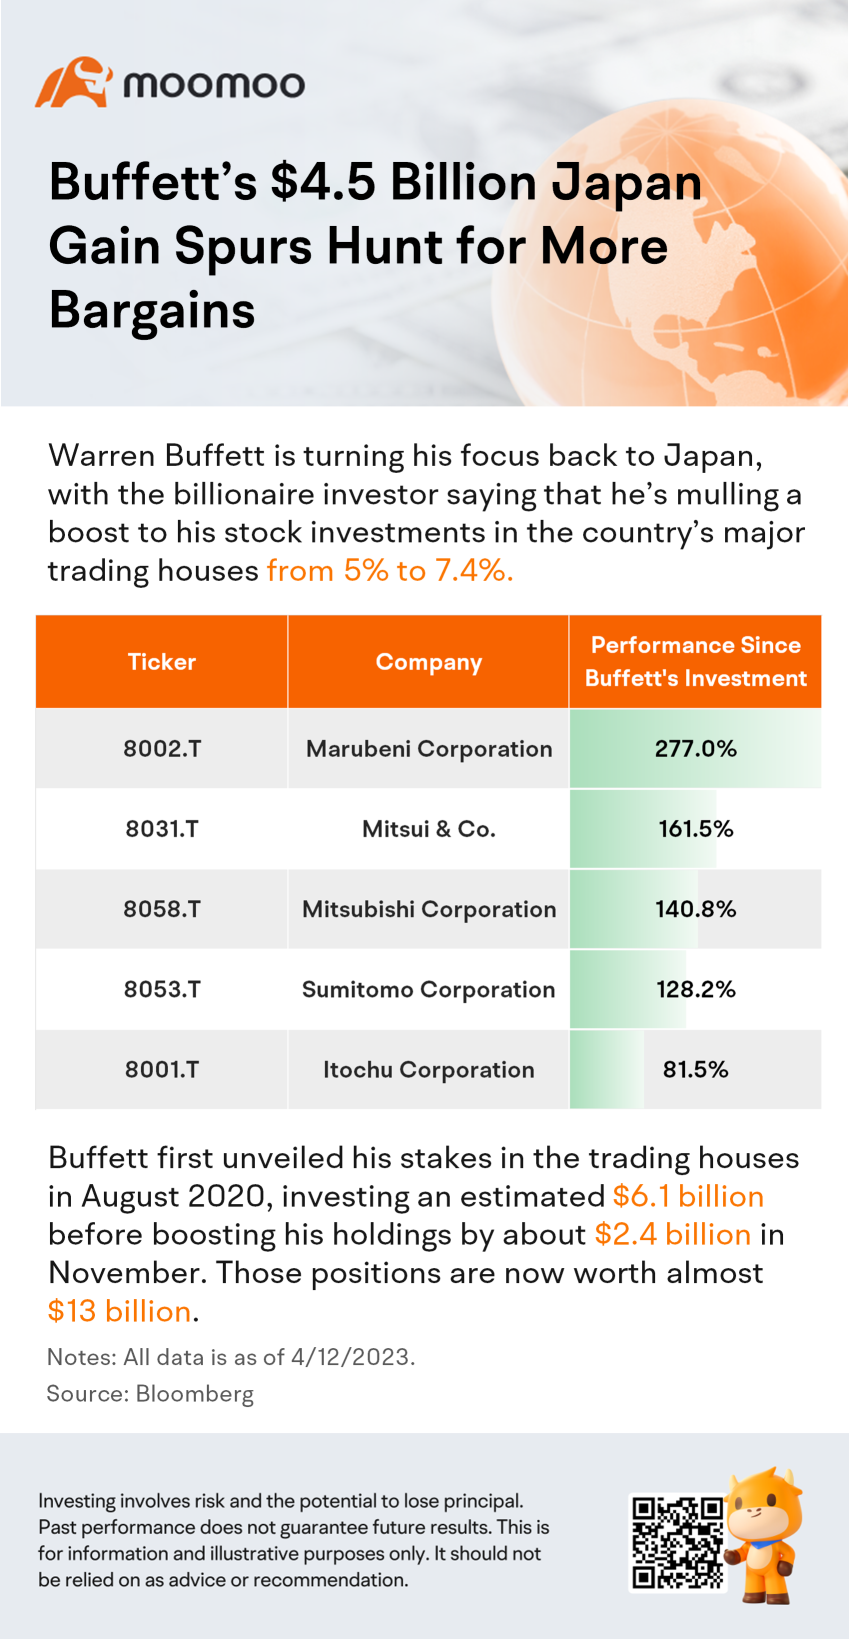 巴菲特在日本获得的45亿美元收益刺激了人们对更多便宜货的追求